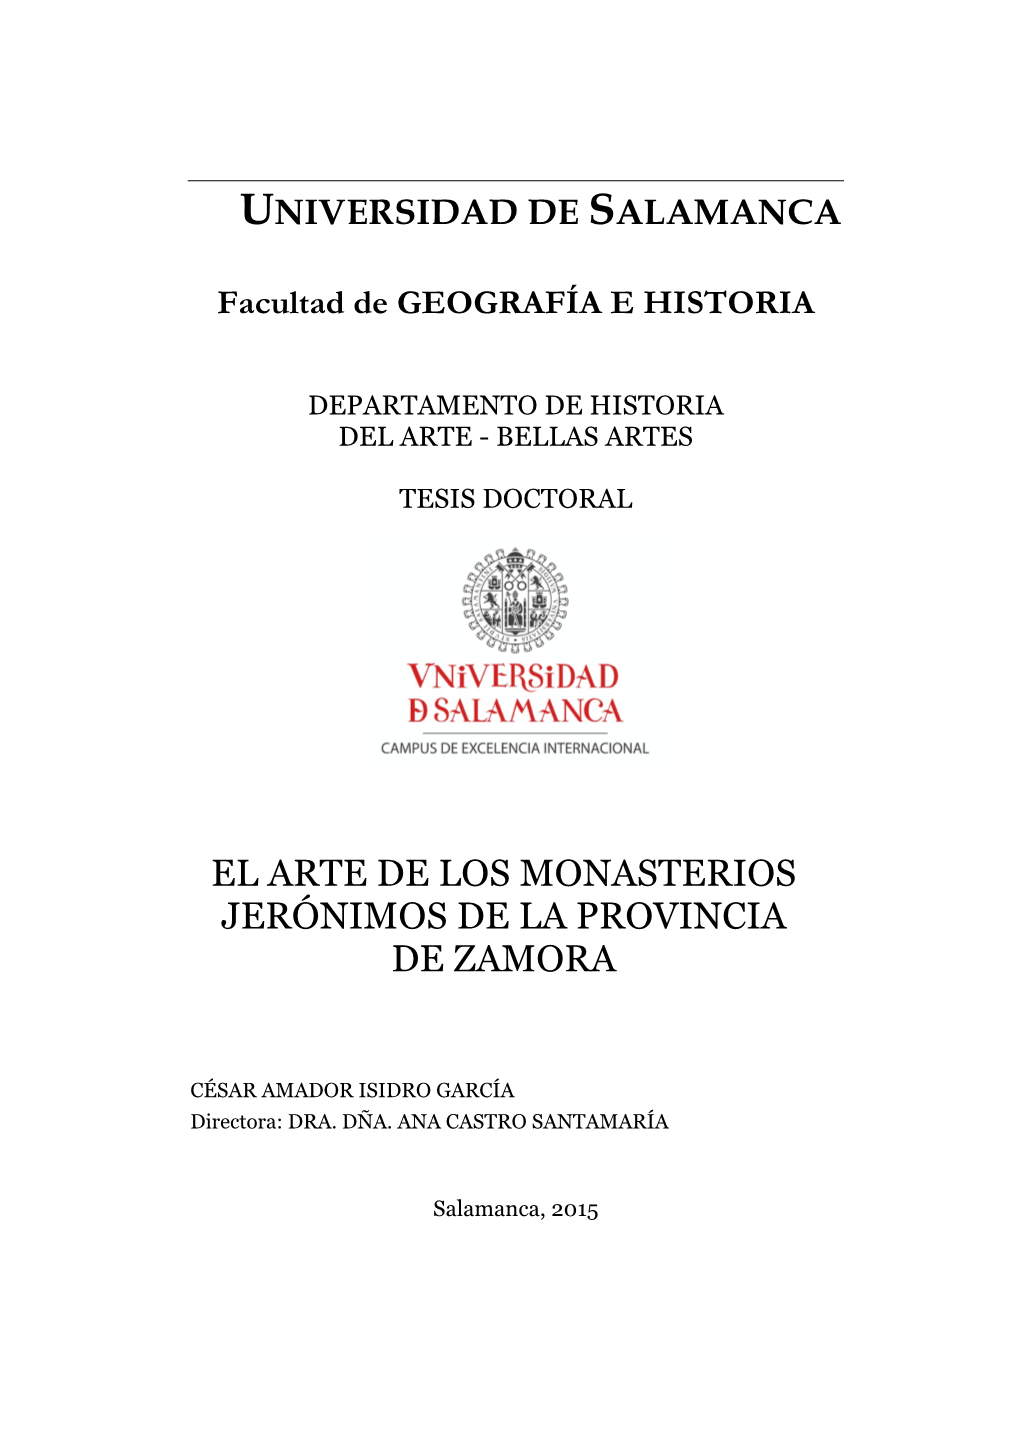 El Arte De Los Monasterios Jerónimos De La Provincia De Zamora